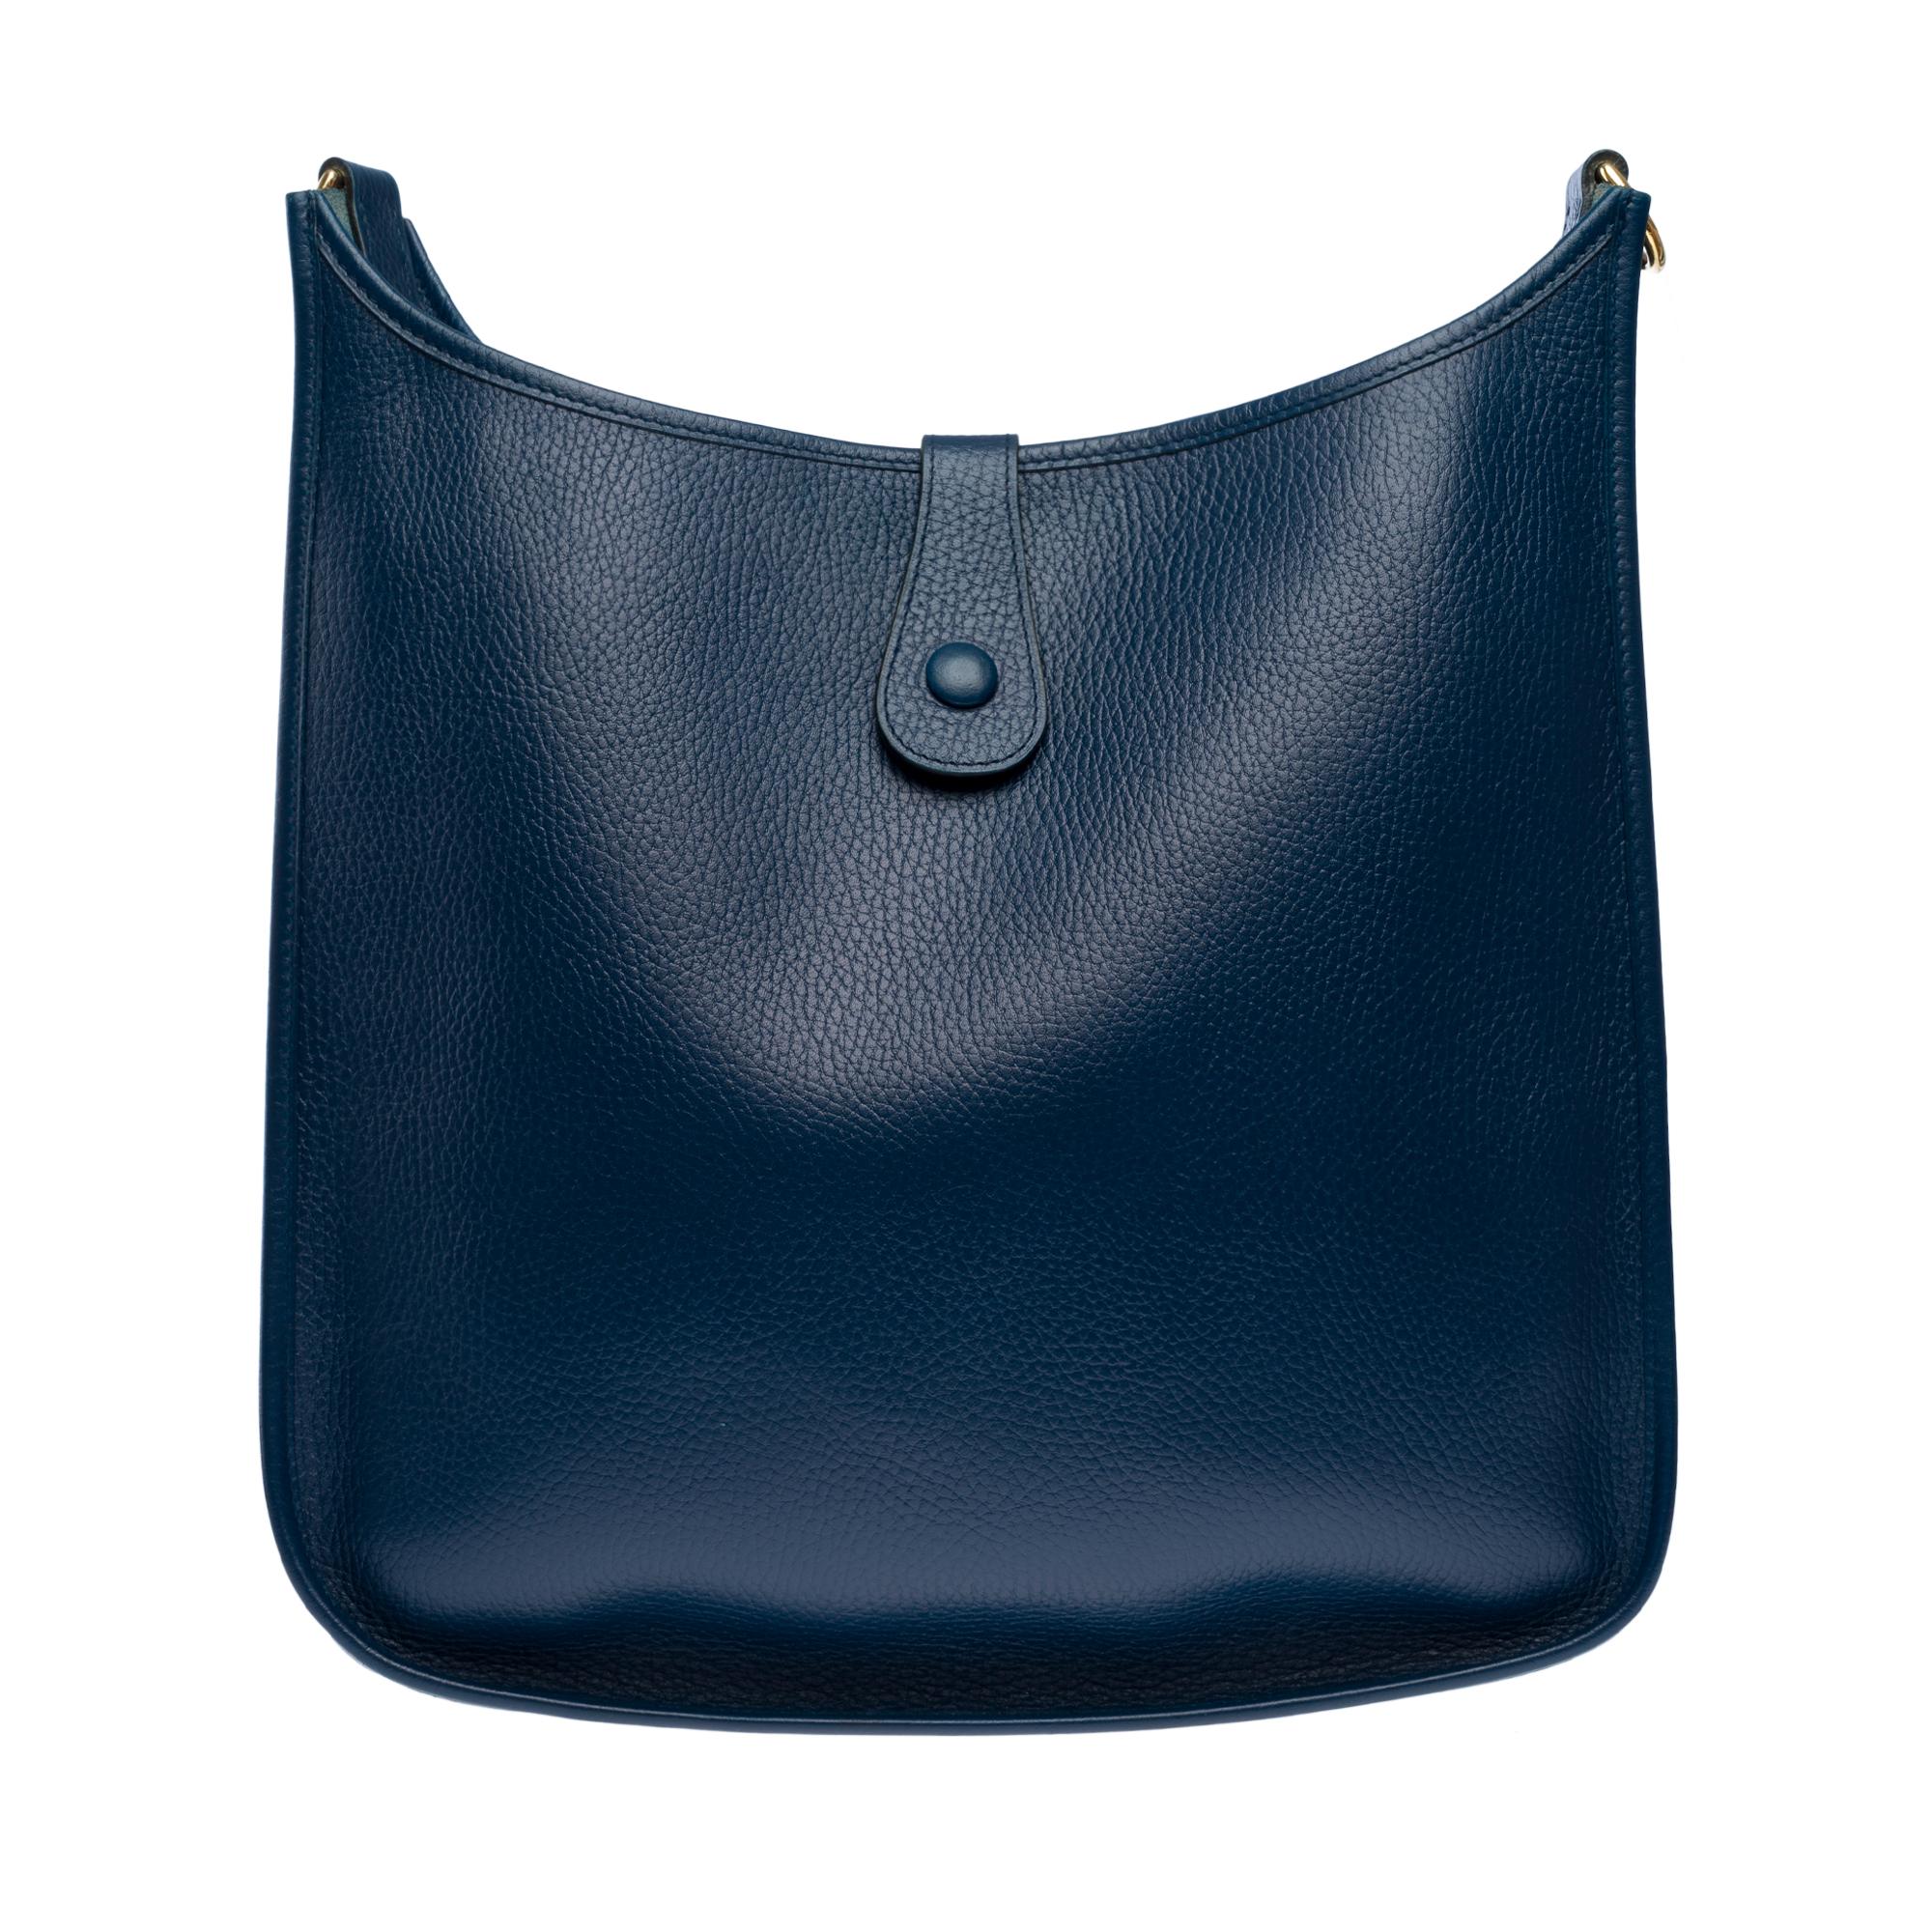 Hermès Evelyne GM  shoulder bag in Navy Blue Taurillon Clemence leather, GHW 1